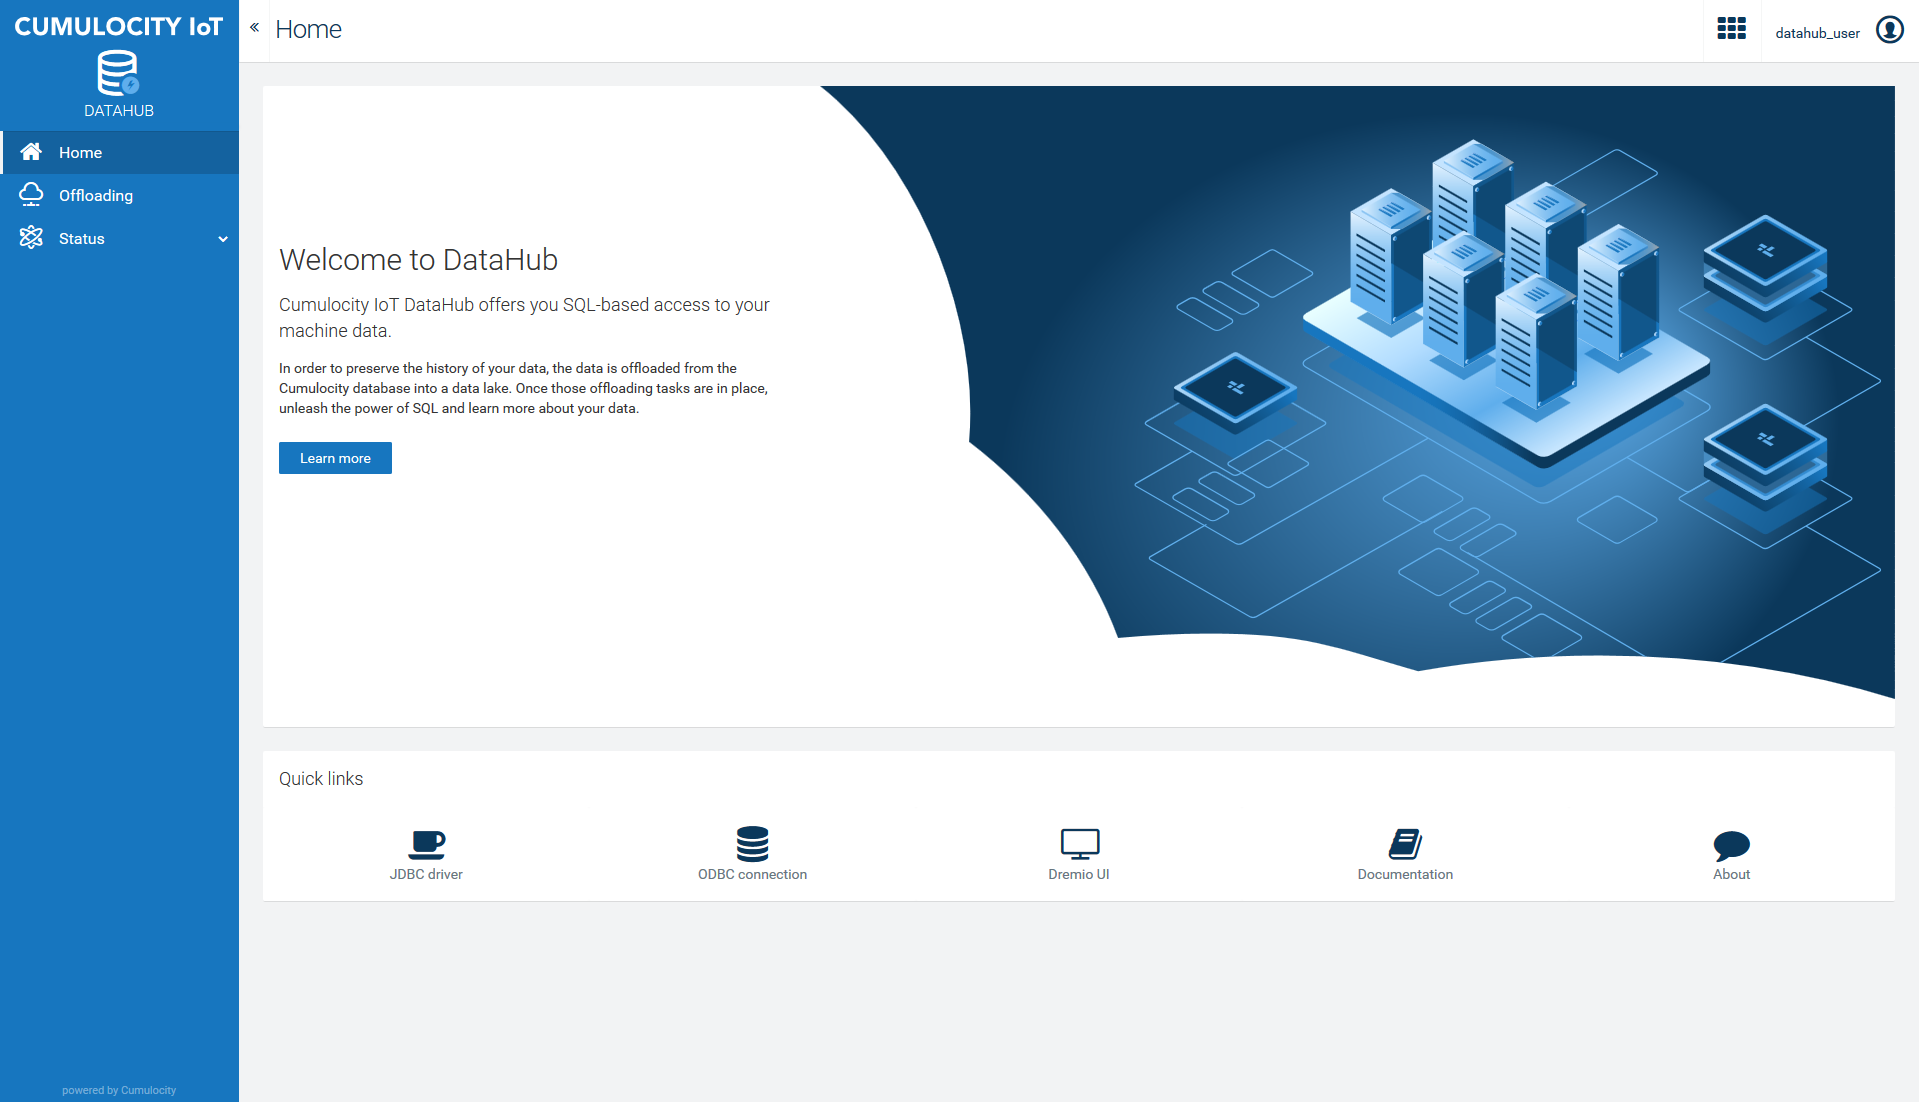 DataHub homepage